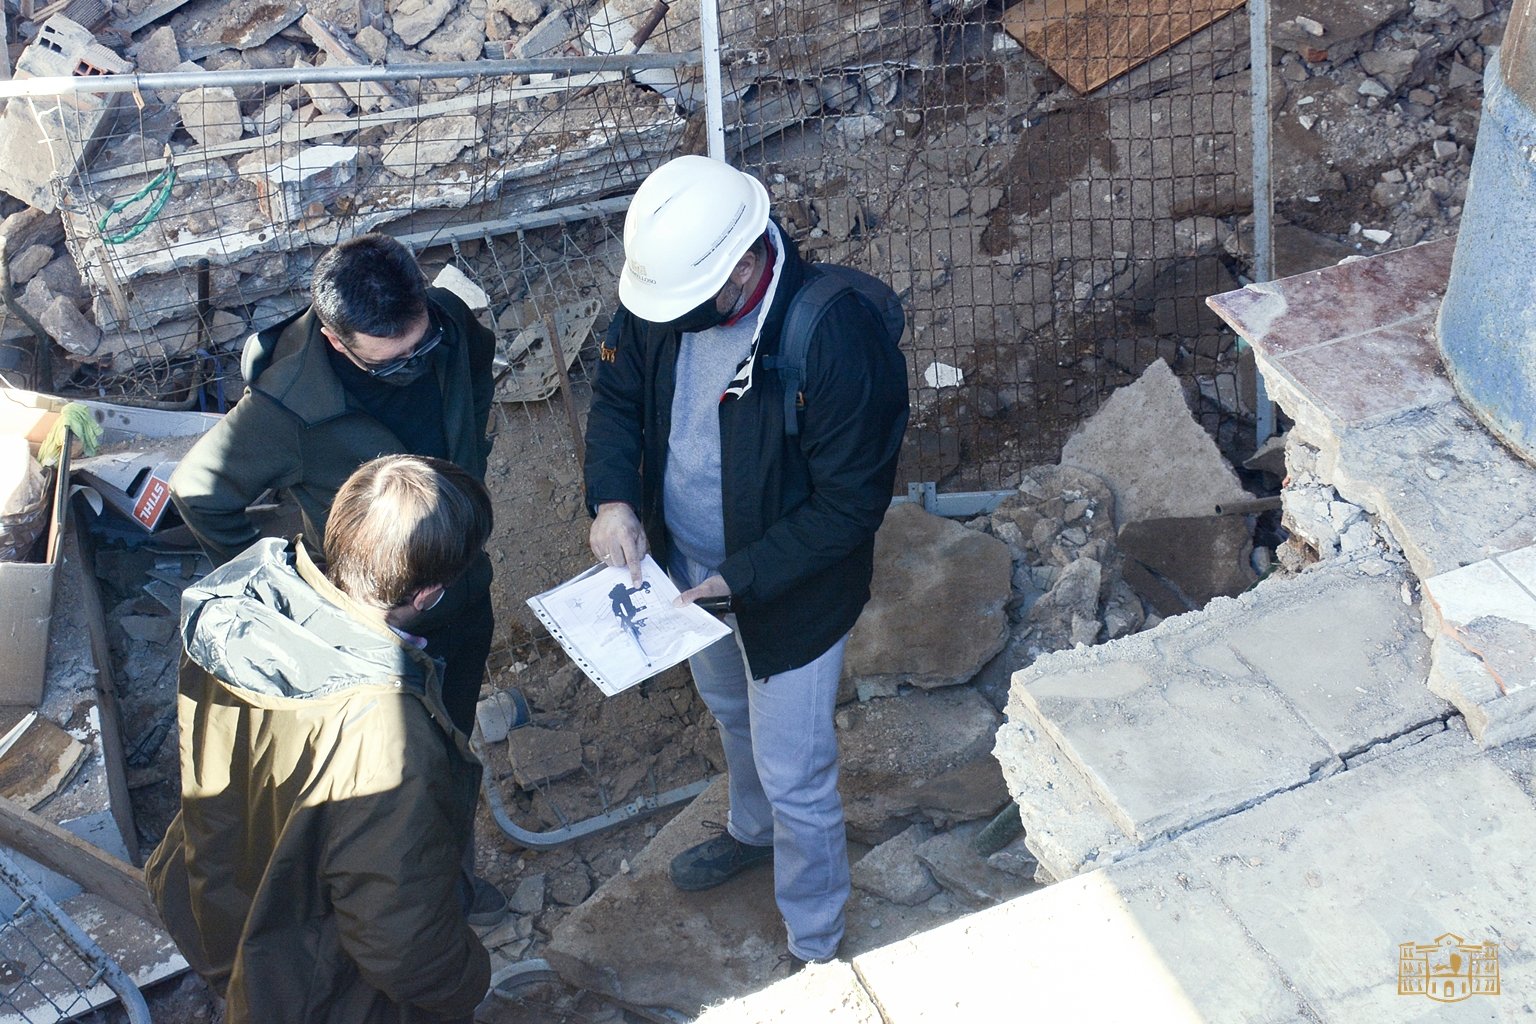 Expertos de la UCLM visitan la zona donde se produjeron los derrumbes para conocer el estado del terreno y plantear posibilidades para el estudio del subsuelo
